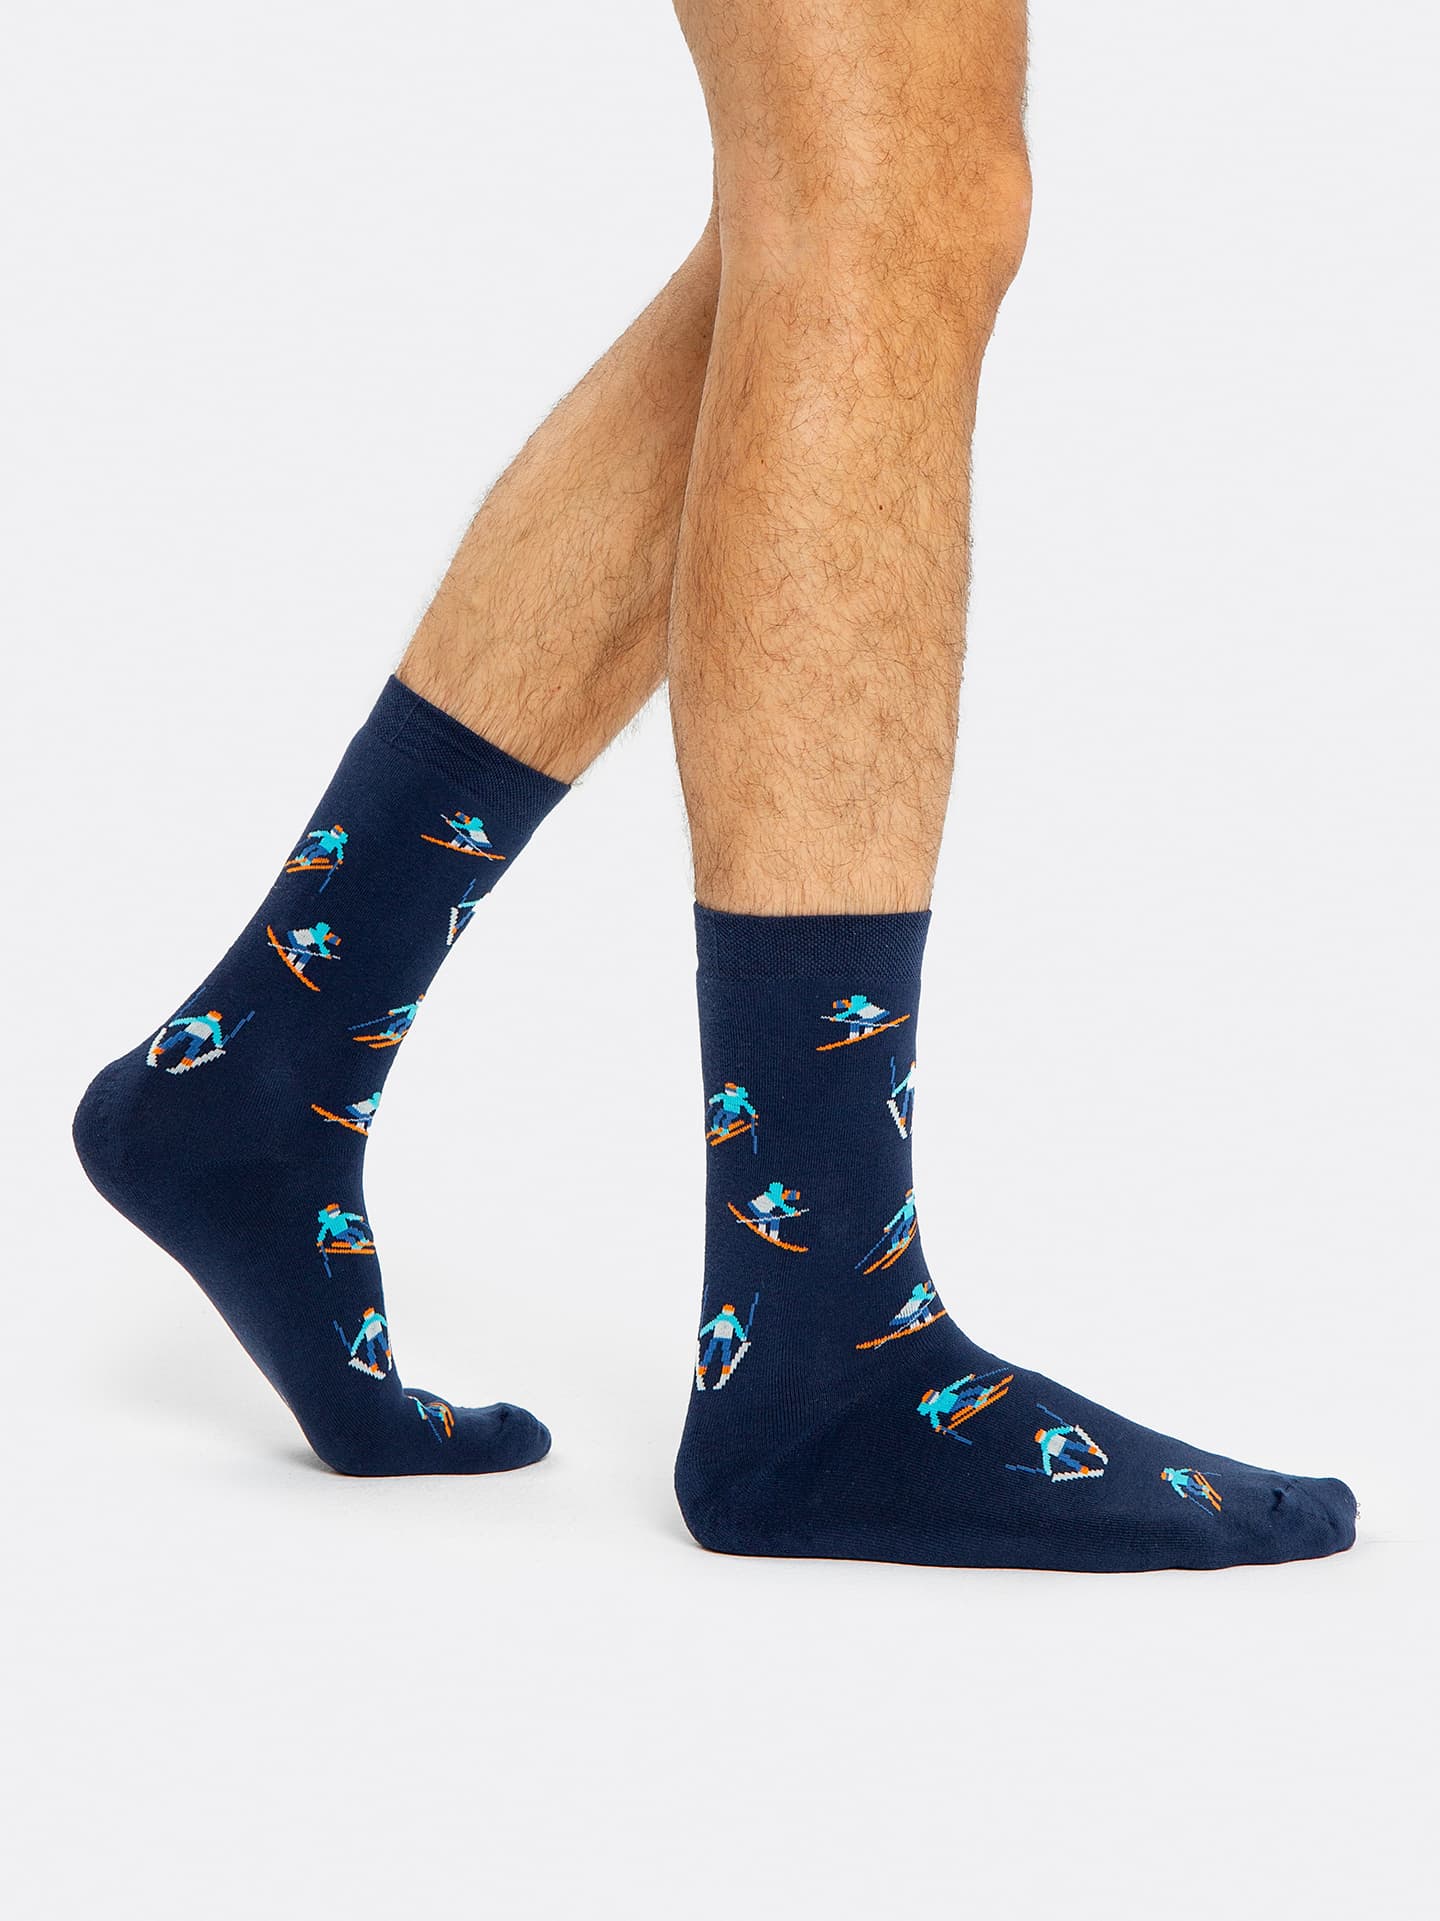 

Махровые мужские носки темно-синего цвета с принтом в виде лыжников, Т.синий, 22620K